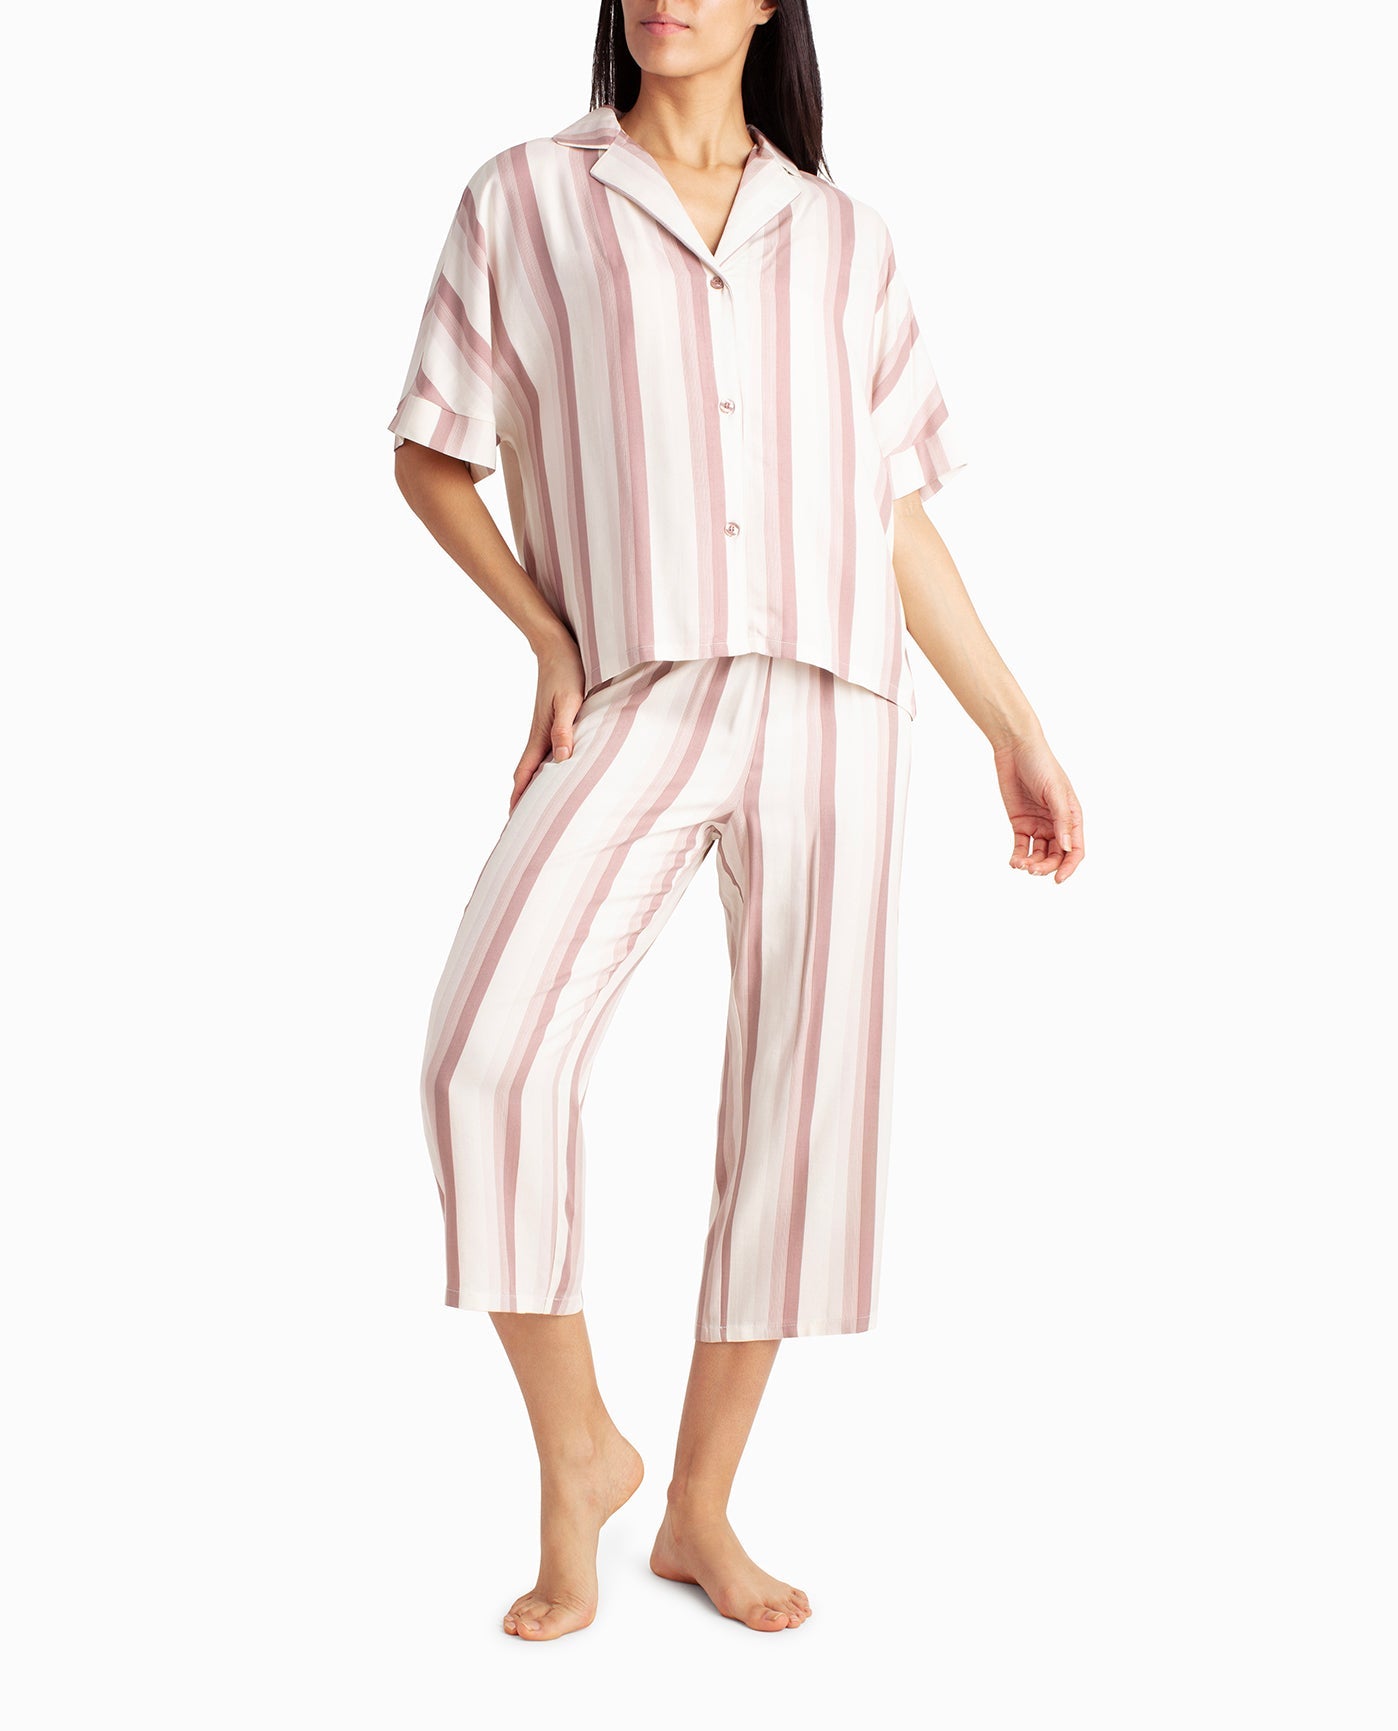 Female Mix Designer Kids Capri Night Suit Vol 5114 Set at Rs 295